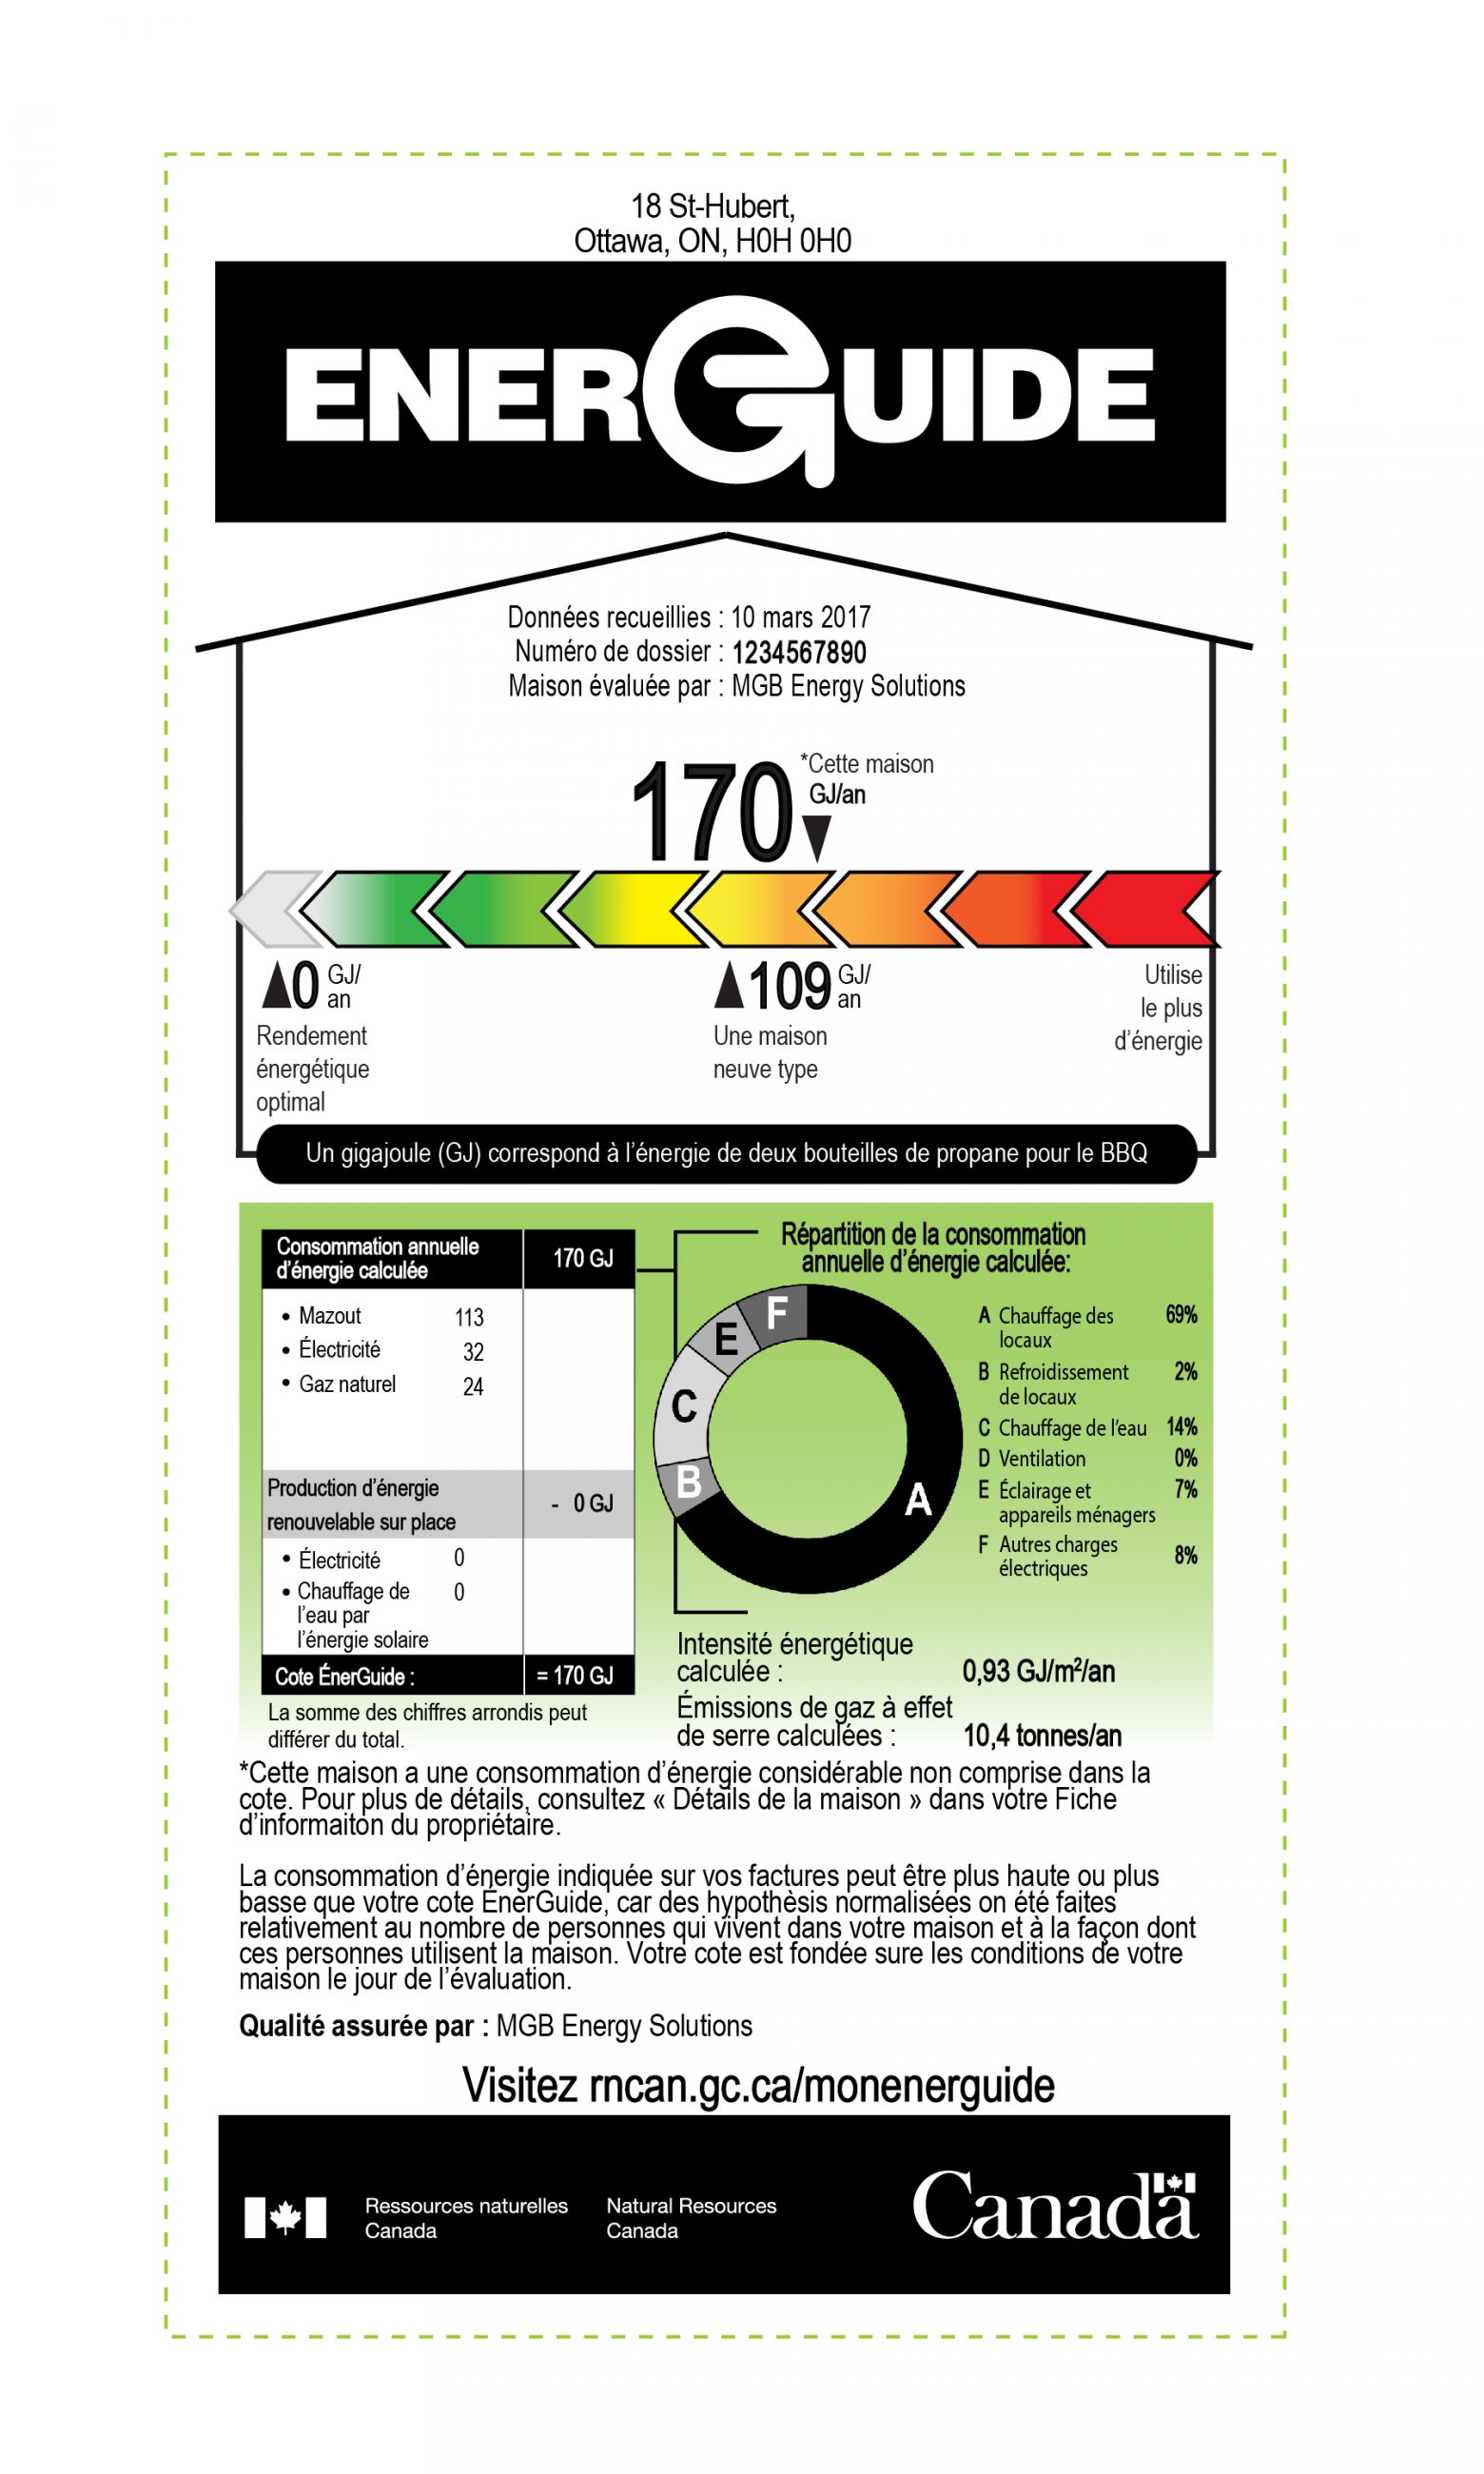 Un exemple d'étiquette ÉnerGuide qui fournit information de l’évaluation pour le propriétaire, cote Énerguide, échelle d’évaluation du rendement énergétique, le calcul de la cote, et répartition de la consommation d’énergie annuelle calculée